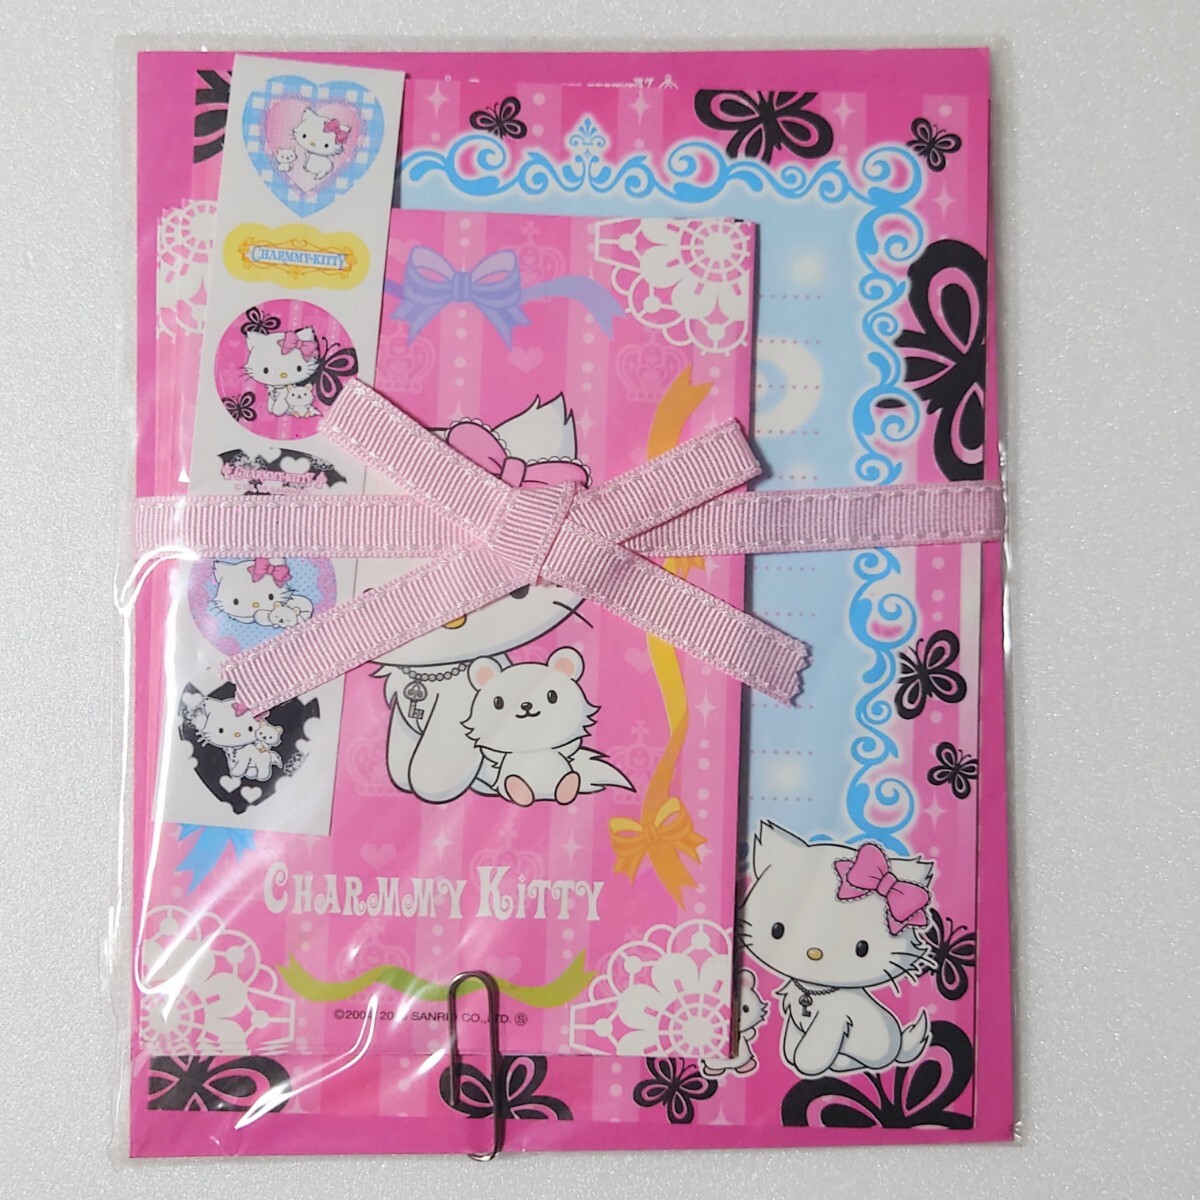  Hello Kitty Hello Kitty tea -mi- Kitty CHARMMY KITTY letter set 2 kind 2005 year 